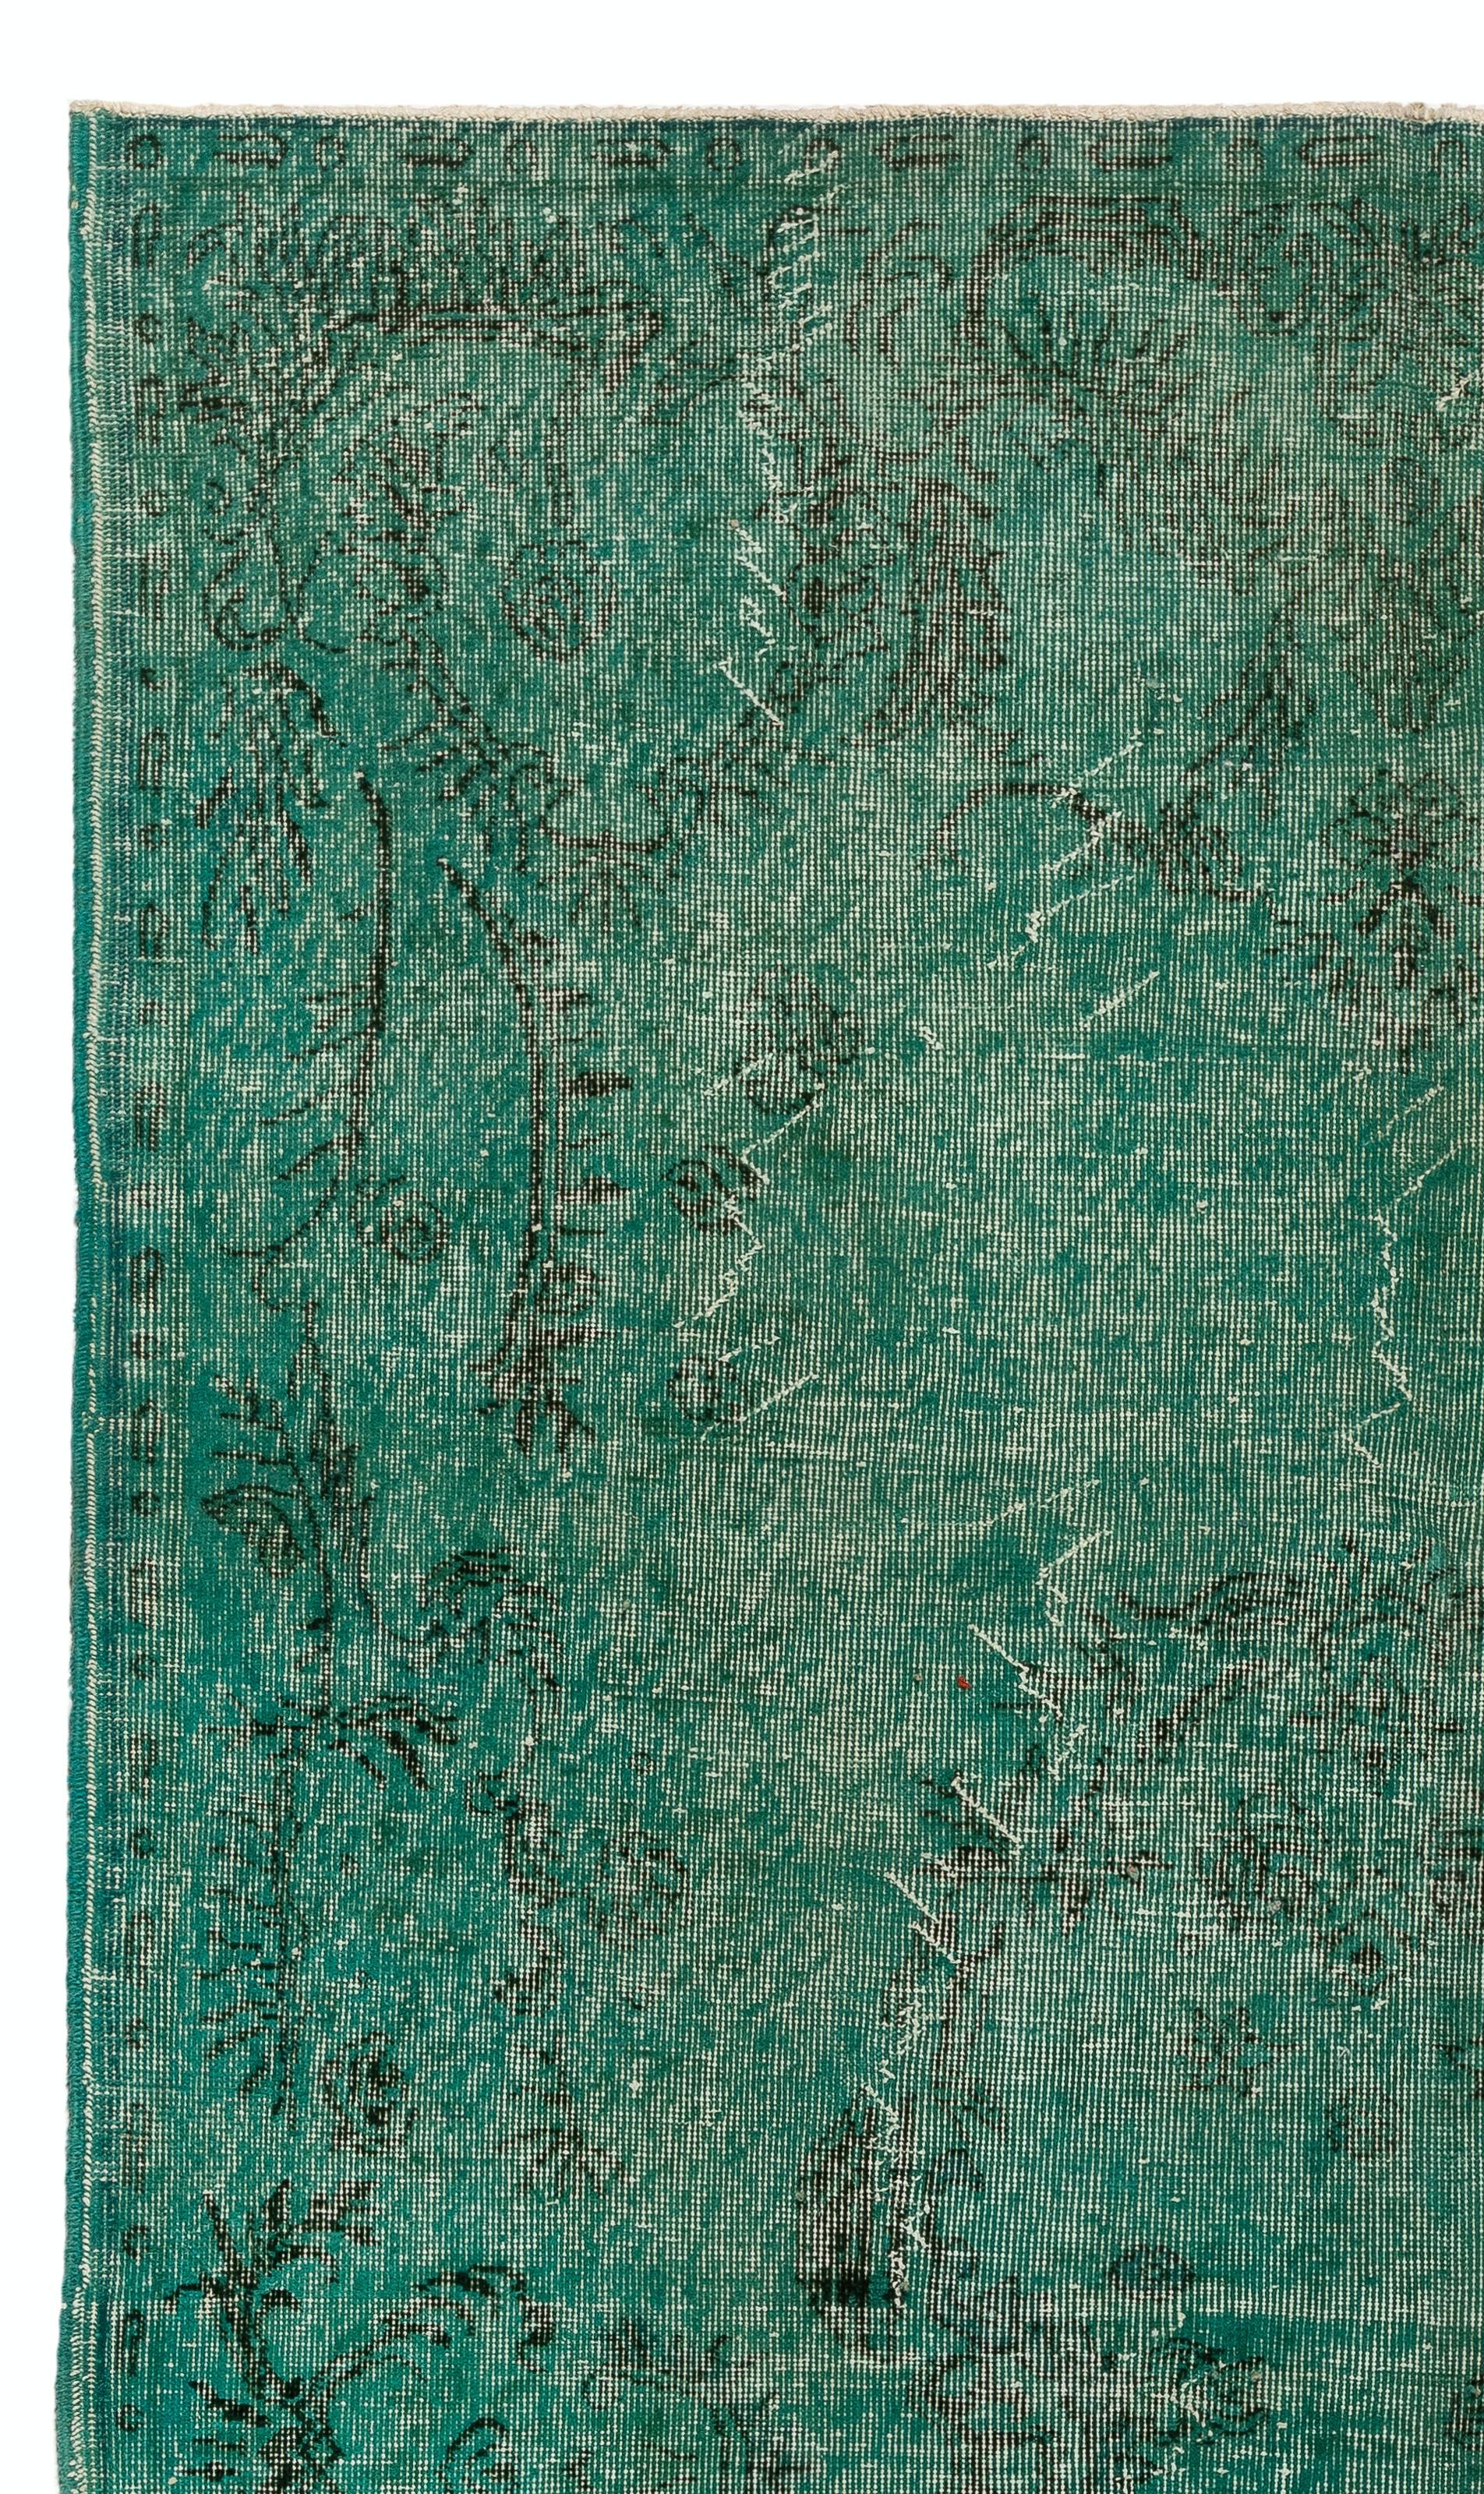 Ein alter türkischer Teppich in Teal Farbe neu gefärbt. Maße: 5.7 x 9 ft.
Fein handgeknüpft, niedriger Wollflor auf Baumwollbasis. Tief gewaschen.
Robust und für stark frequentierte Bereiche geeignet, sowohl für Wohn- als auch für Geschäftsräume.